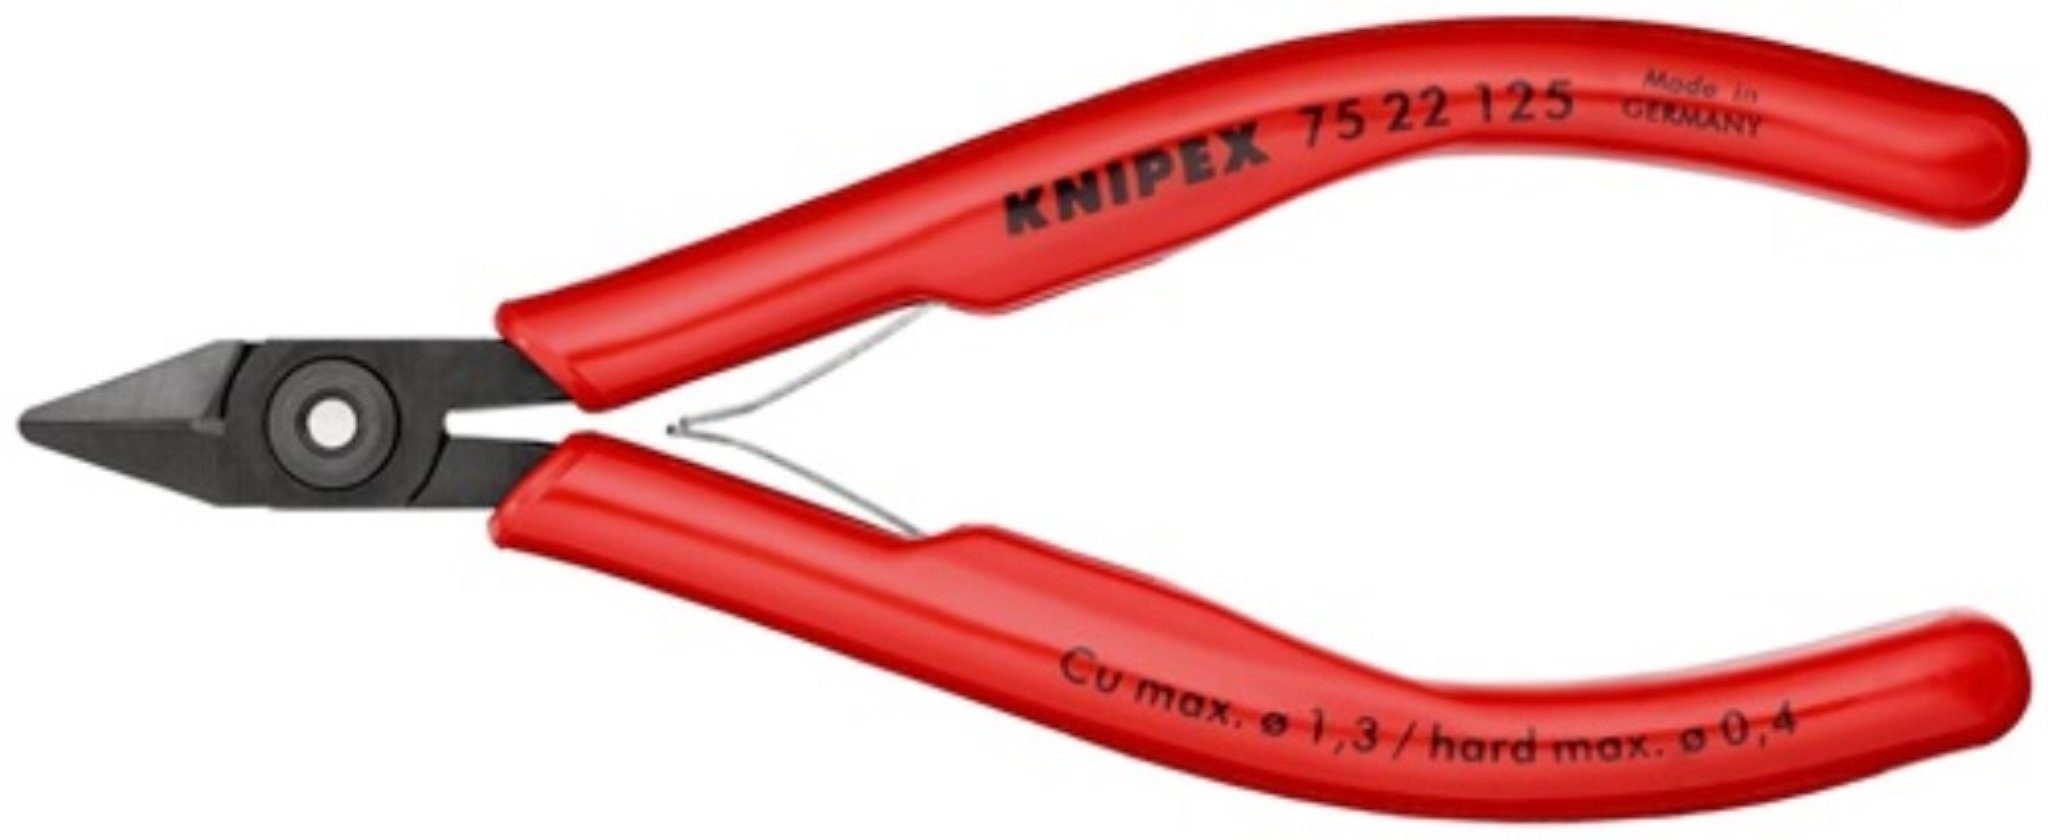 Knipex Seitenschneider Elektronik-Seitenschneider L.125mm Form 2 Facette ja,kl.KNIPEX für fe